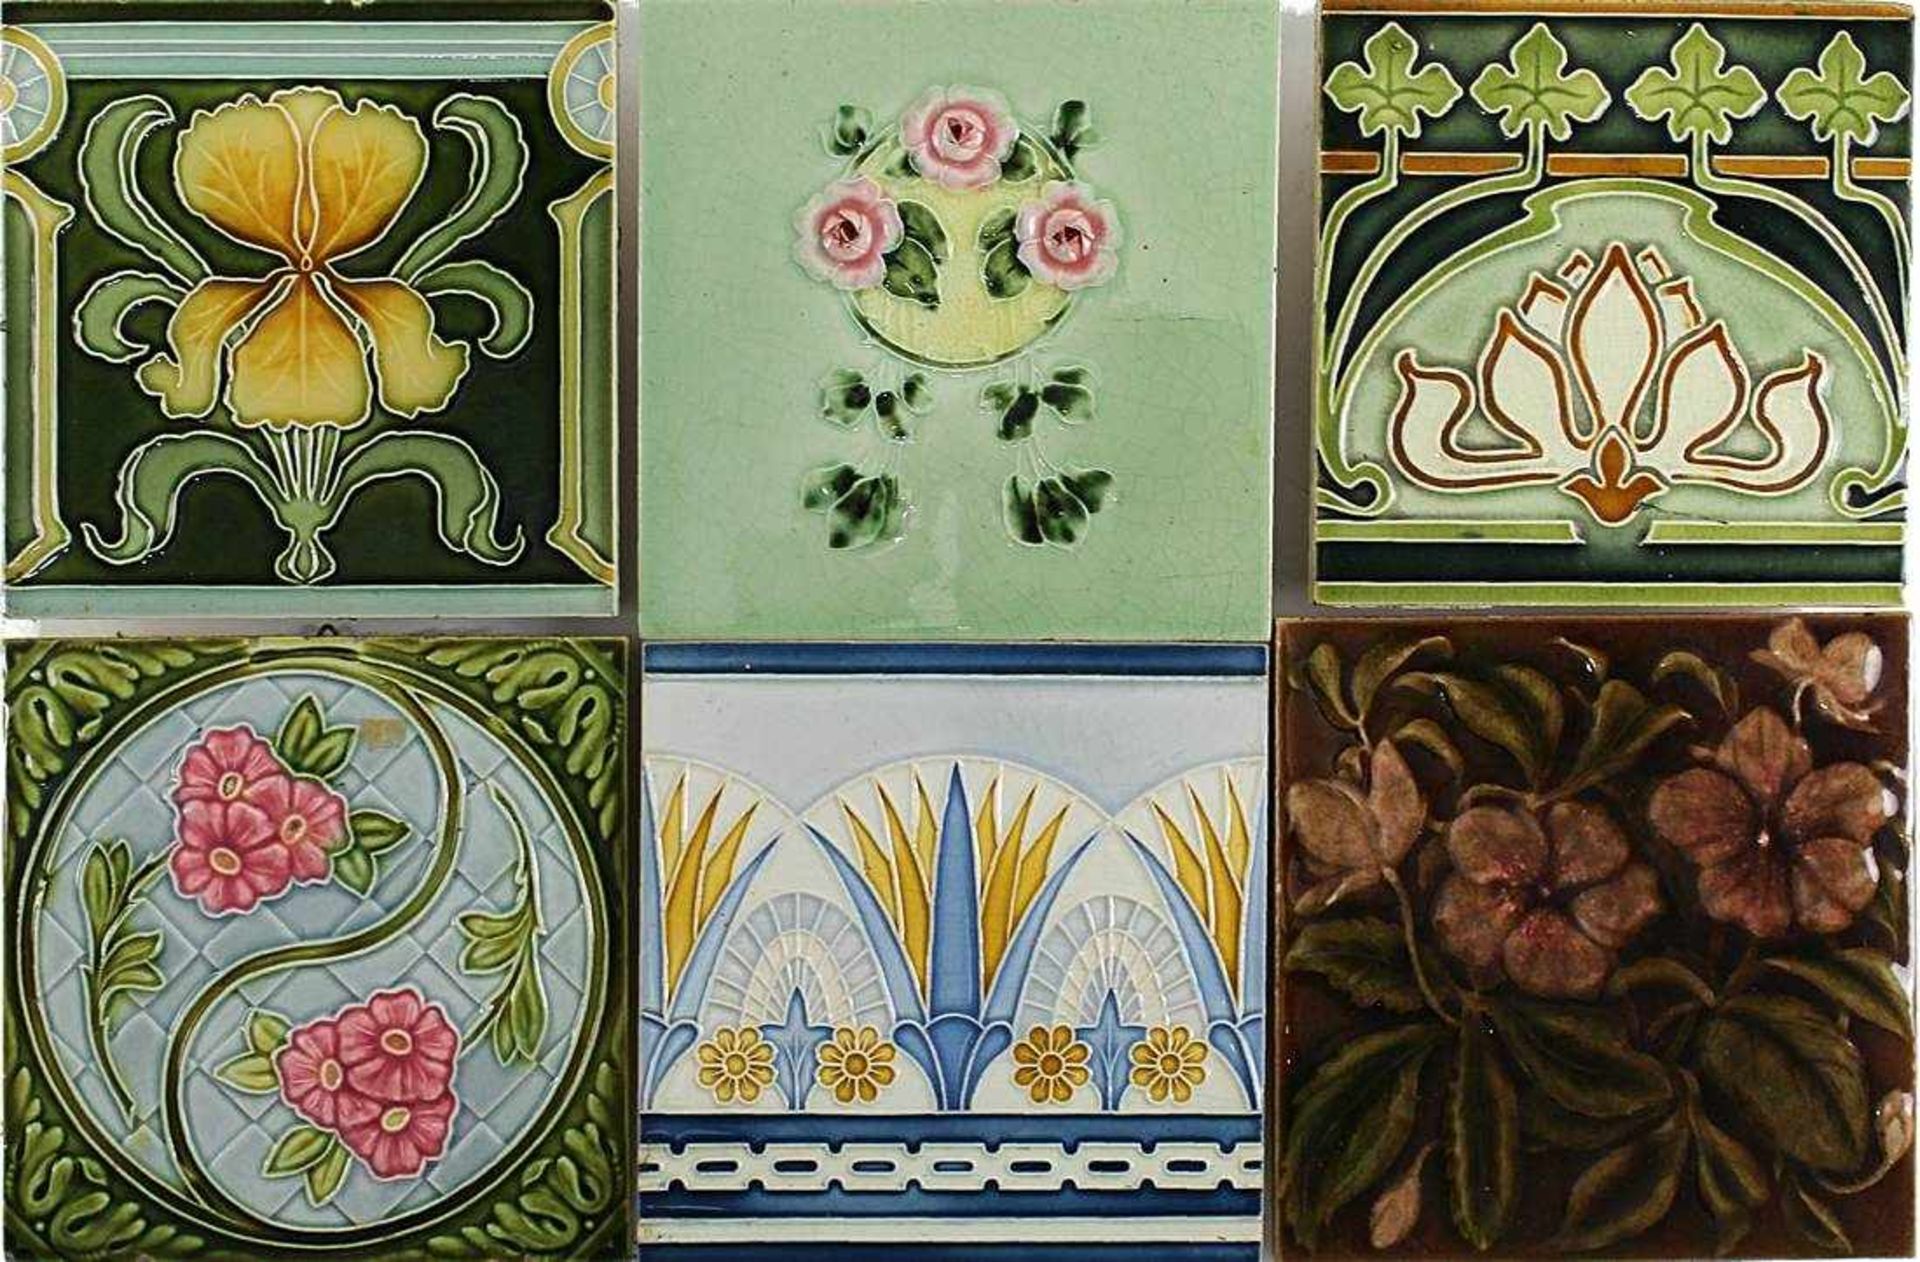 6 Jugendstilfliesen, 1900-1910, Keramik, reliefiert und farbig staffiert mit typischen Motiven der